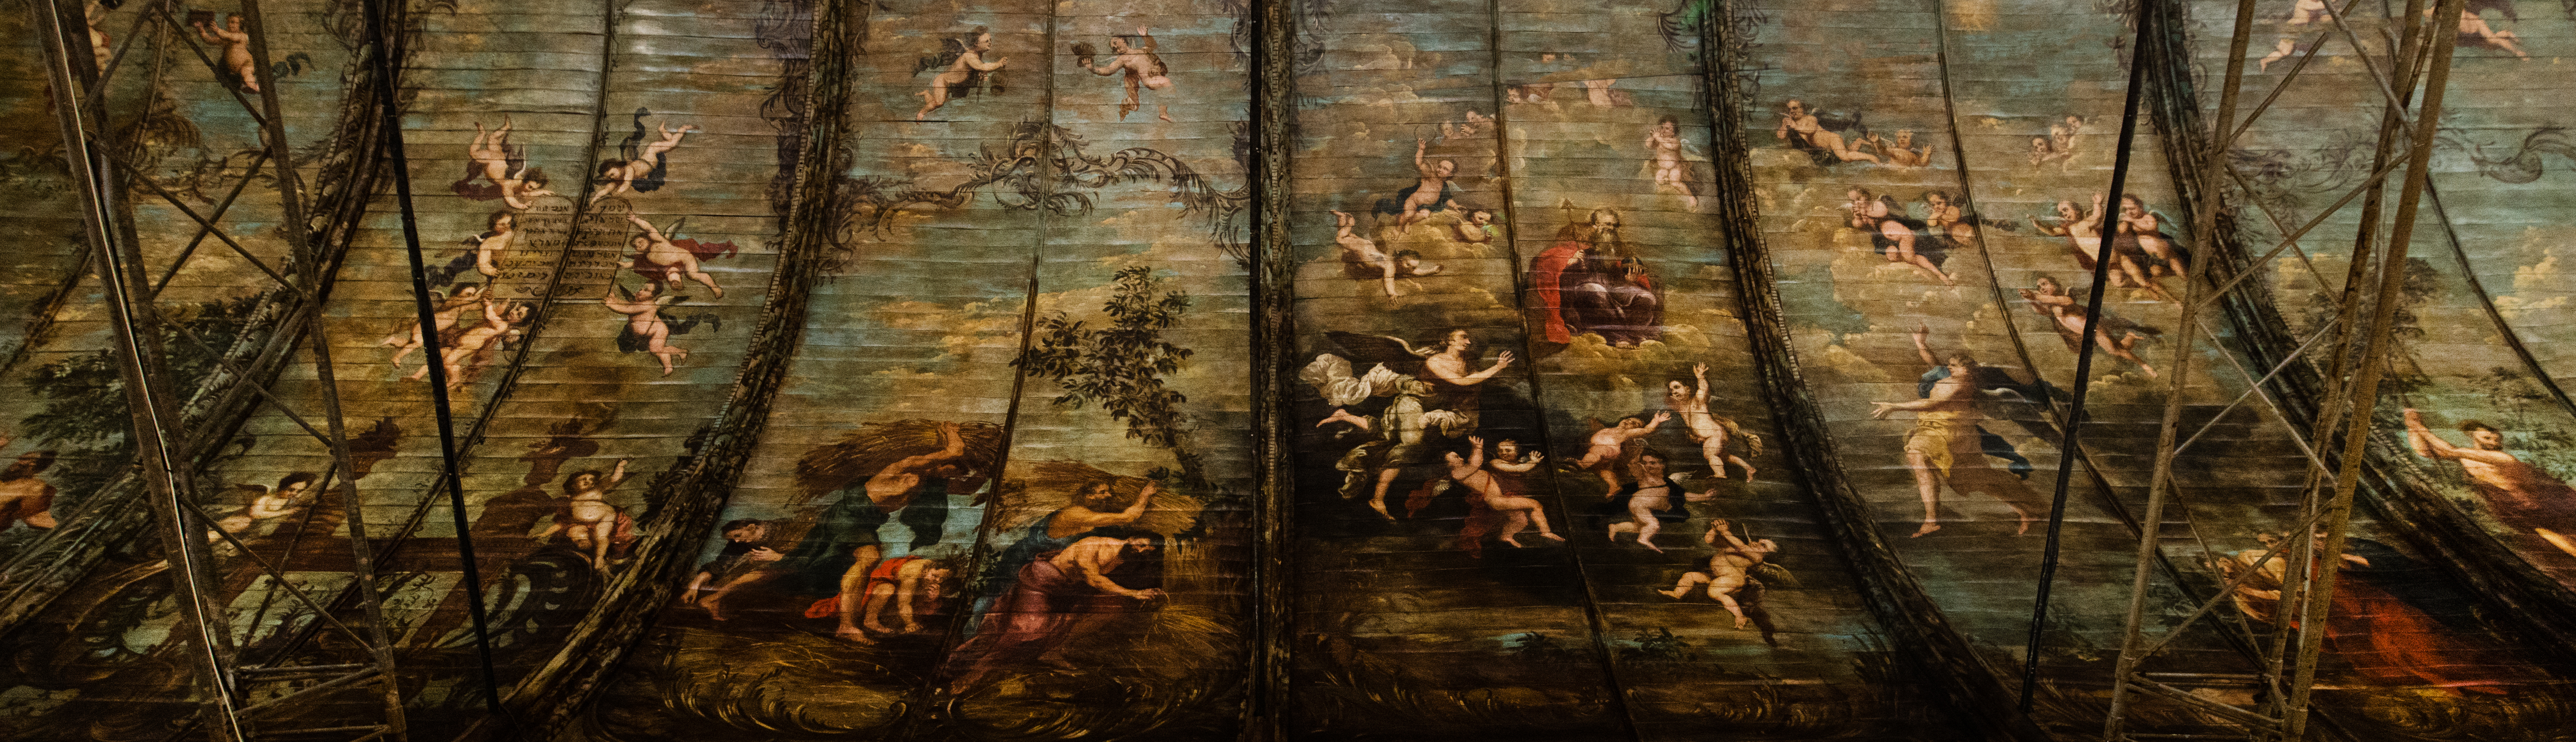 Sint-Pietersabdij muurschilderingen plafond